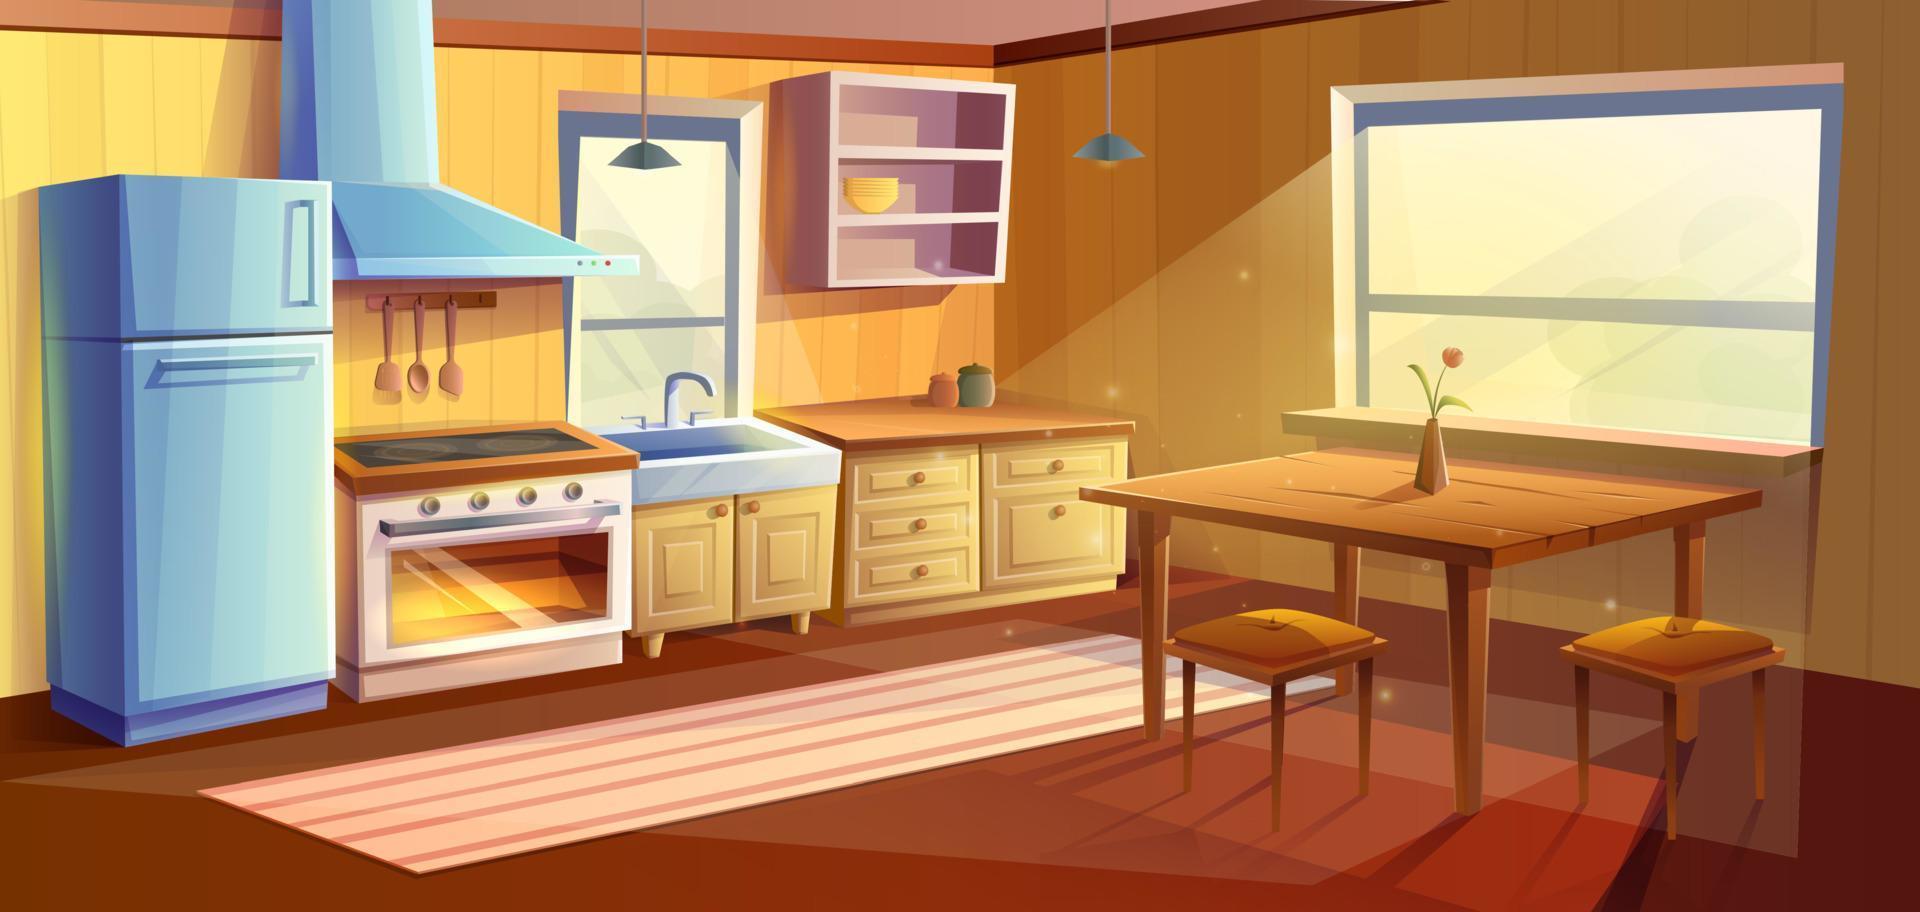 vetor desenho animado estilo ilustração do cozinha sala. jantar quarto com jantar de madeira mesa. geladeira, forno com uma fogão e fogão, afundar, armários e extrator capuz.